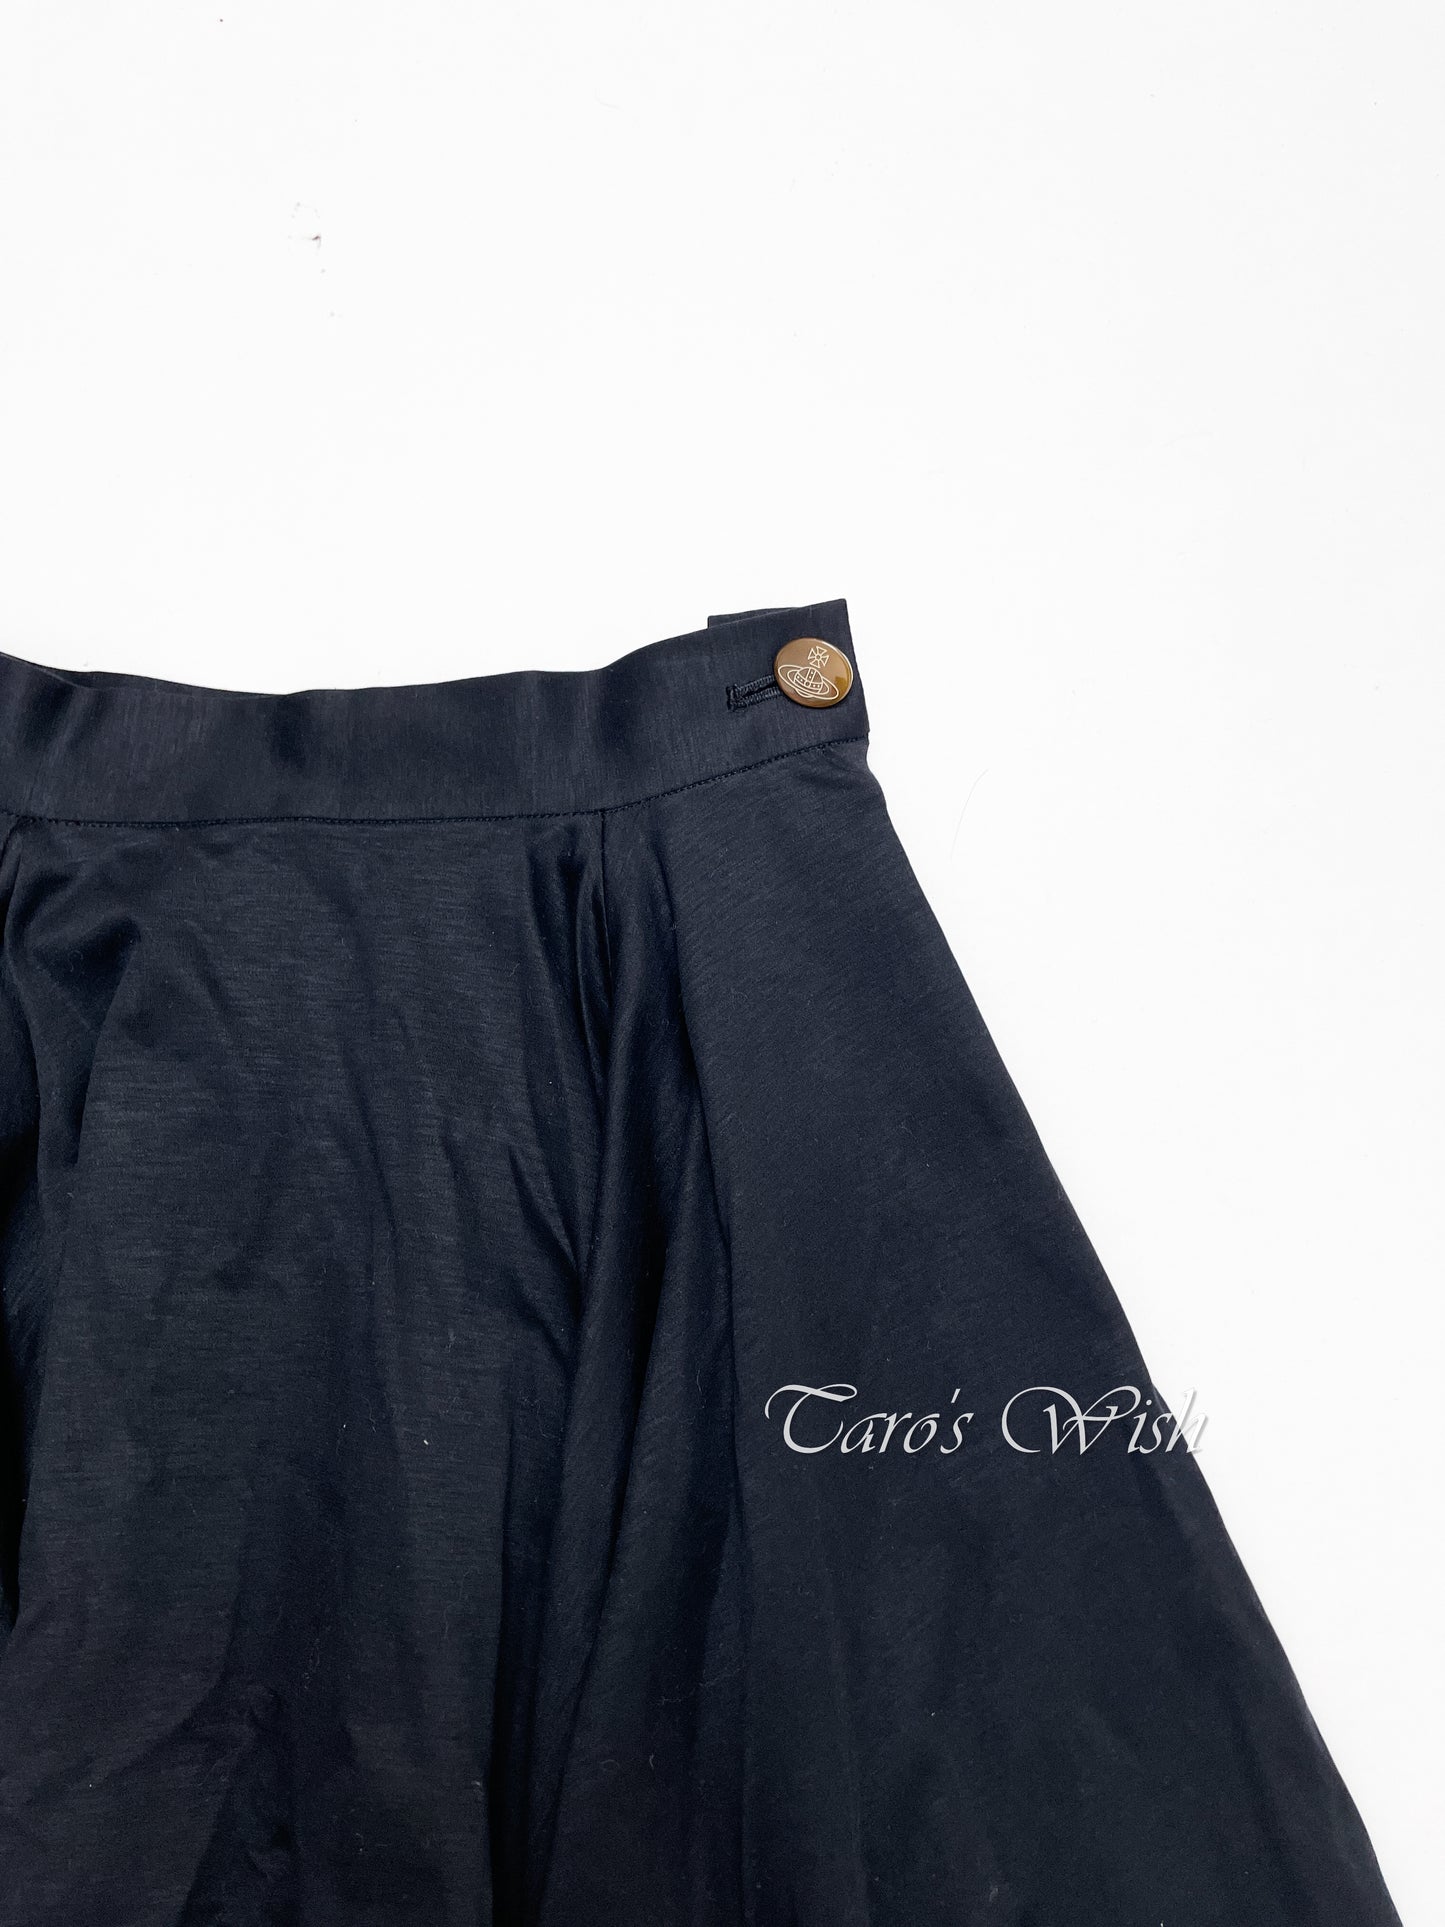 Vivienne Westwood Midi Skirt in Black